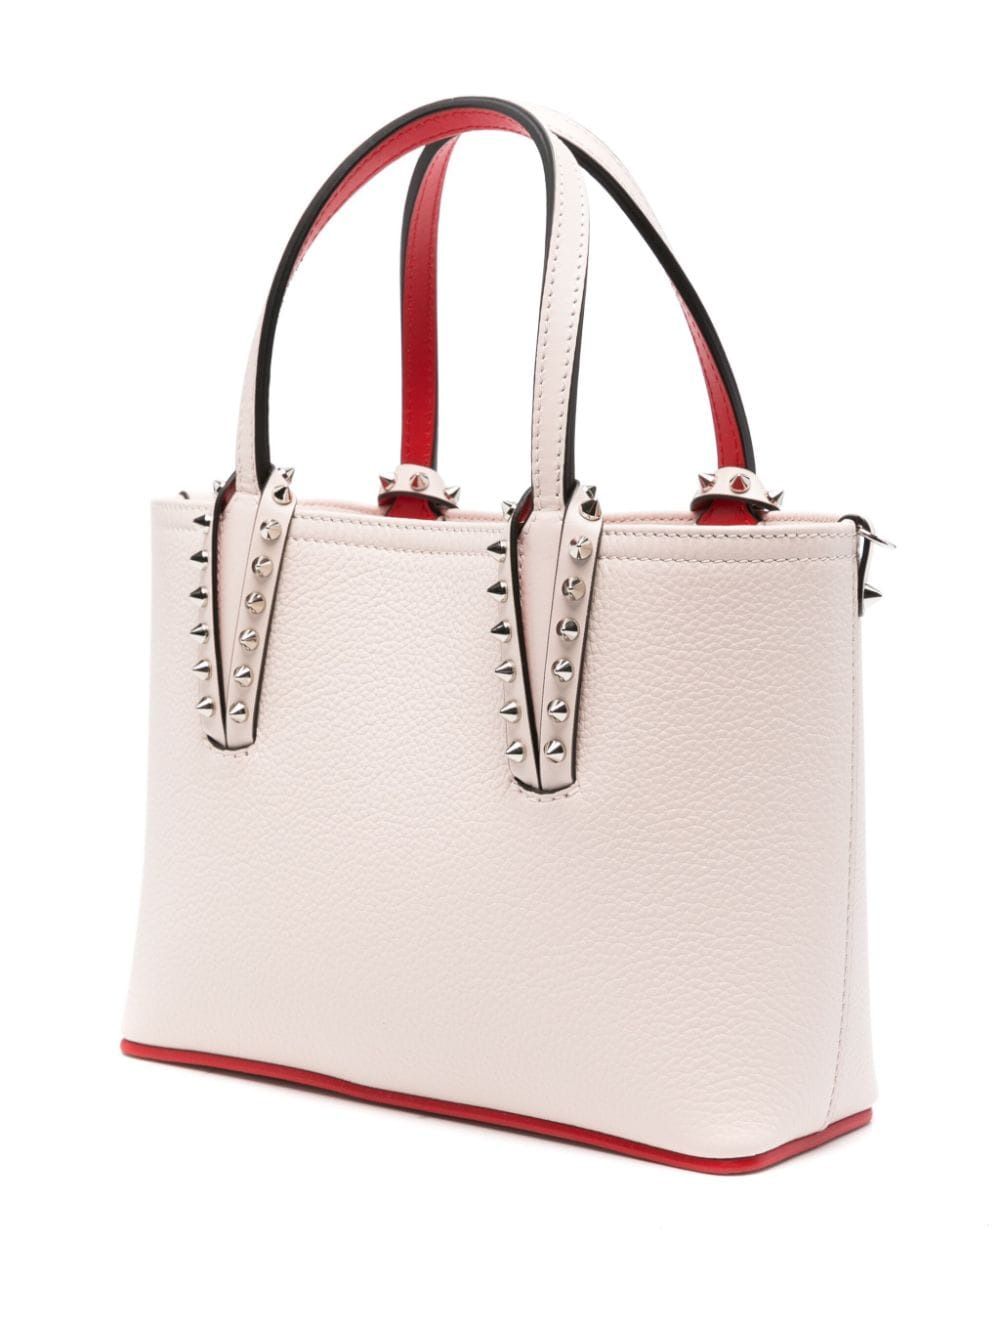 حقيبة يد صغيرة من جلد العجل المحبب بتصميم كاباتا مزينة بدبابيس معدنية لون أبيض حليبي، 17x23.5x8 سم